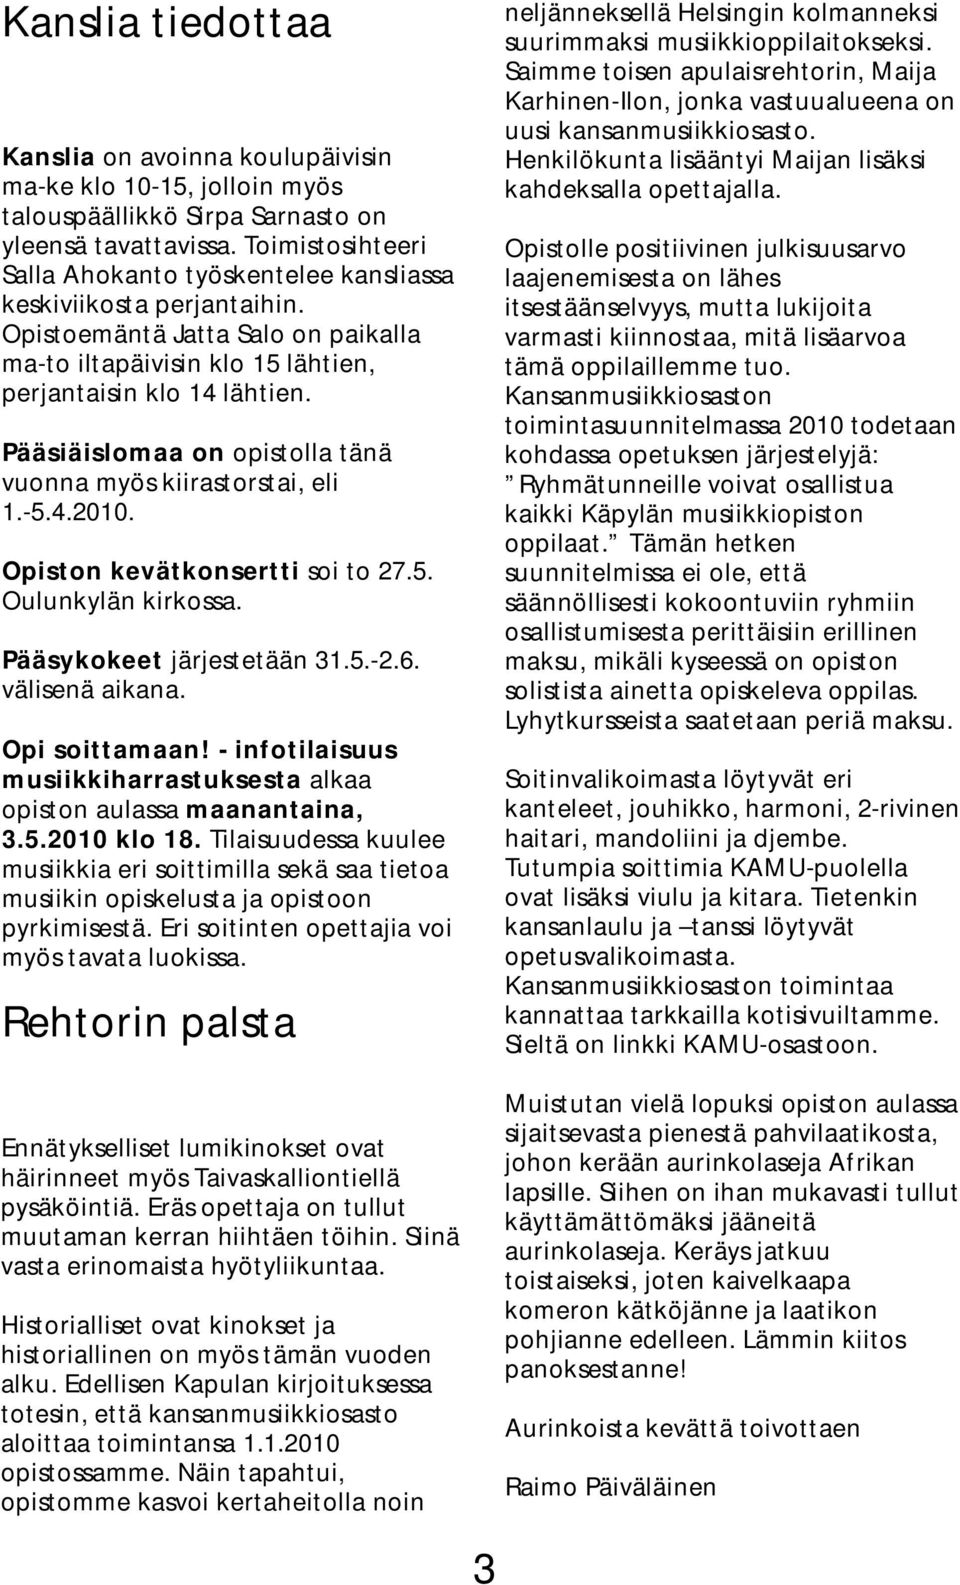 Pääsiäislomaa on opistolla tänä vuonna myös kiirastorstai, eli 1.-5.4.2010. Opiston kevätkonsertti soi to 27.5. Oulunkylän kirkossa. Pääsykokeet järjestetään 31.5.-2.6. välisenä aikana.